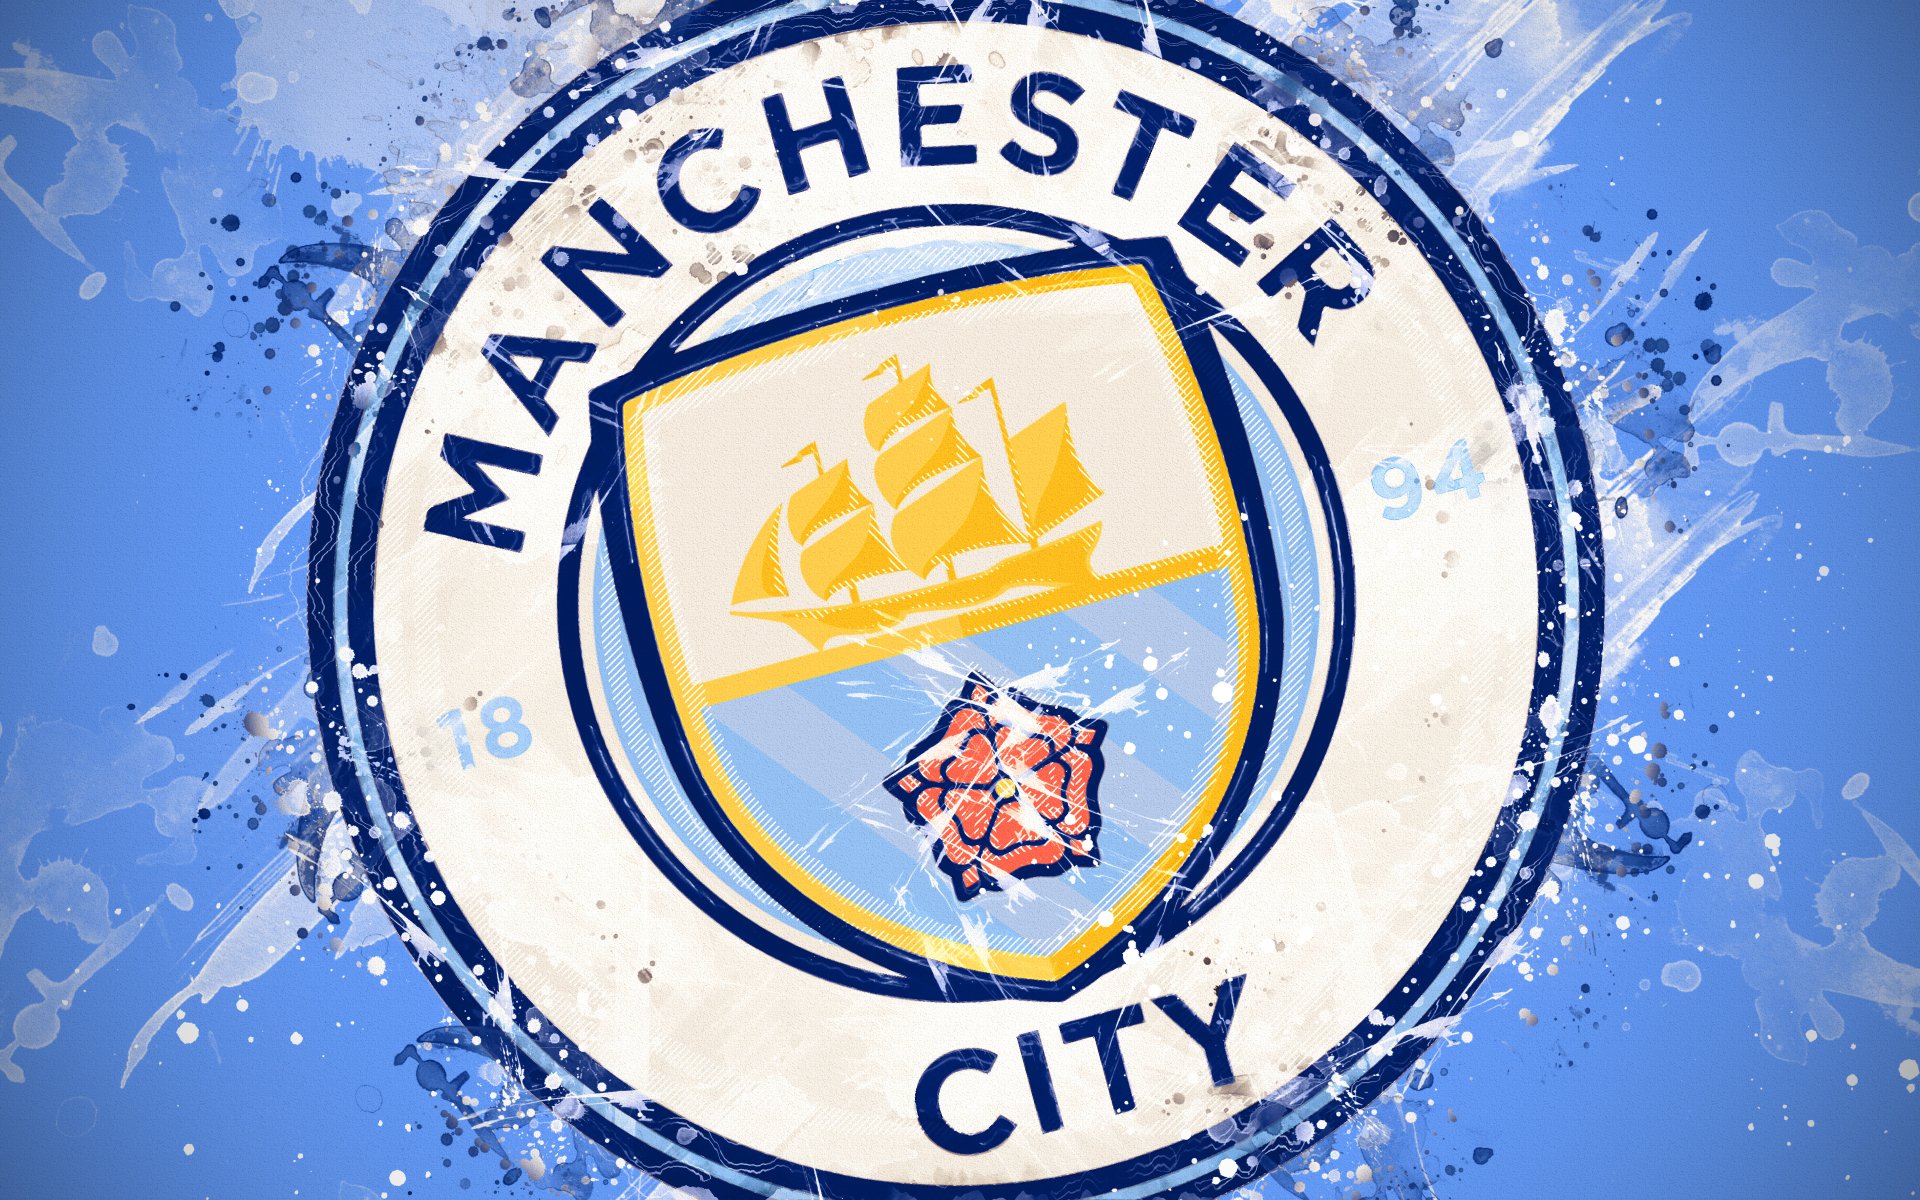 Manchester City Logo 4k Ultra HD Wallpaper | Achtergrond ...